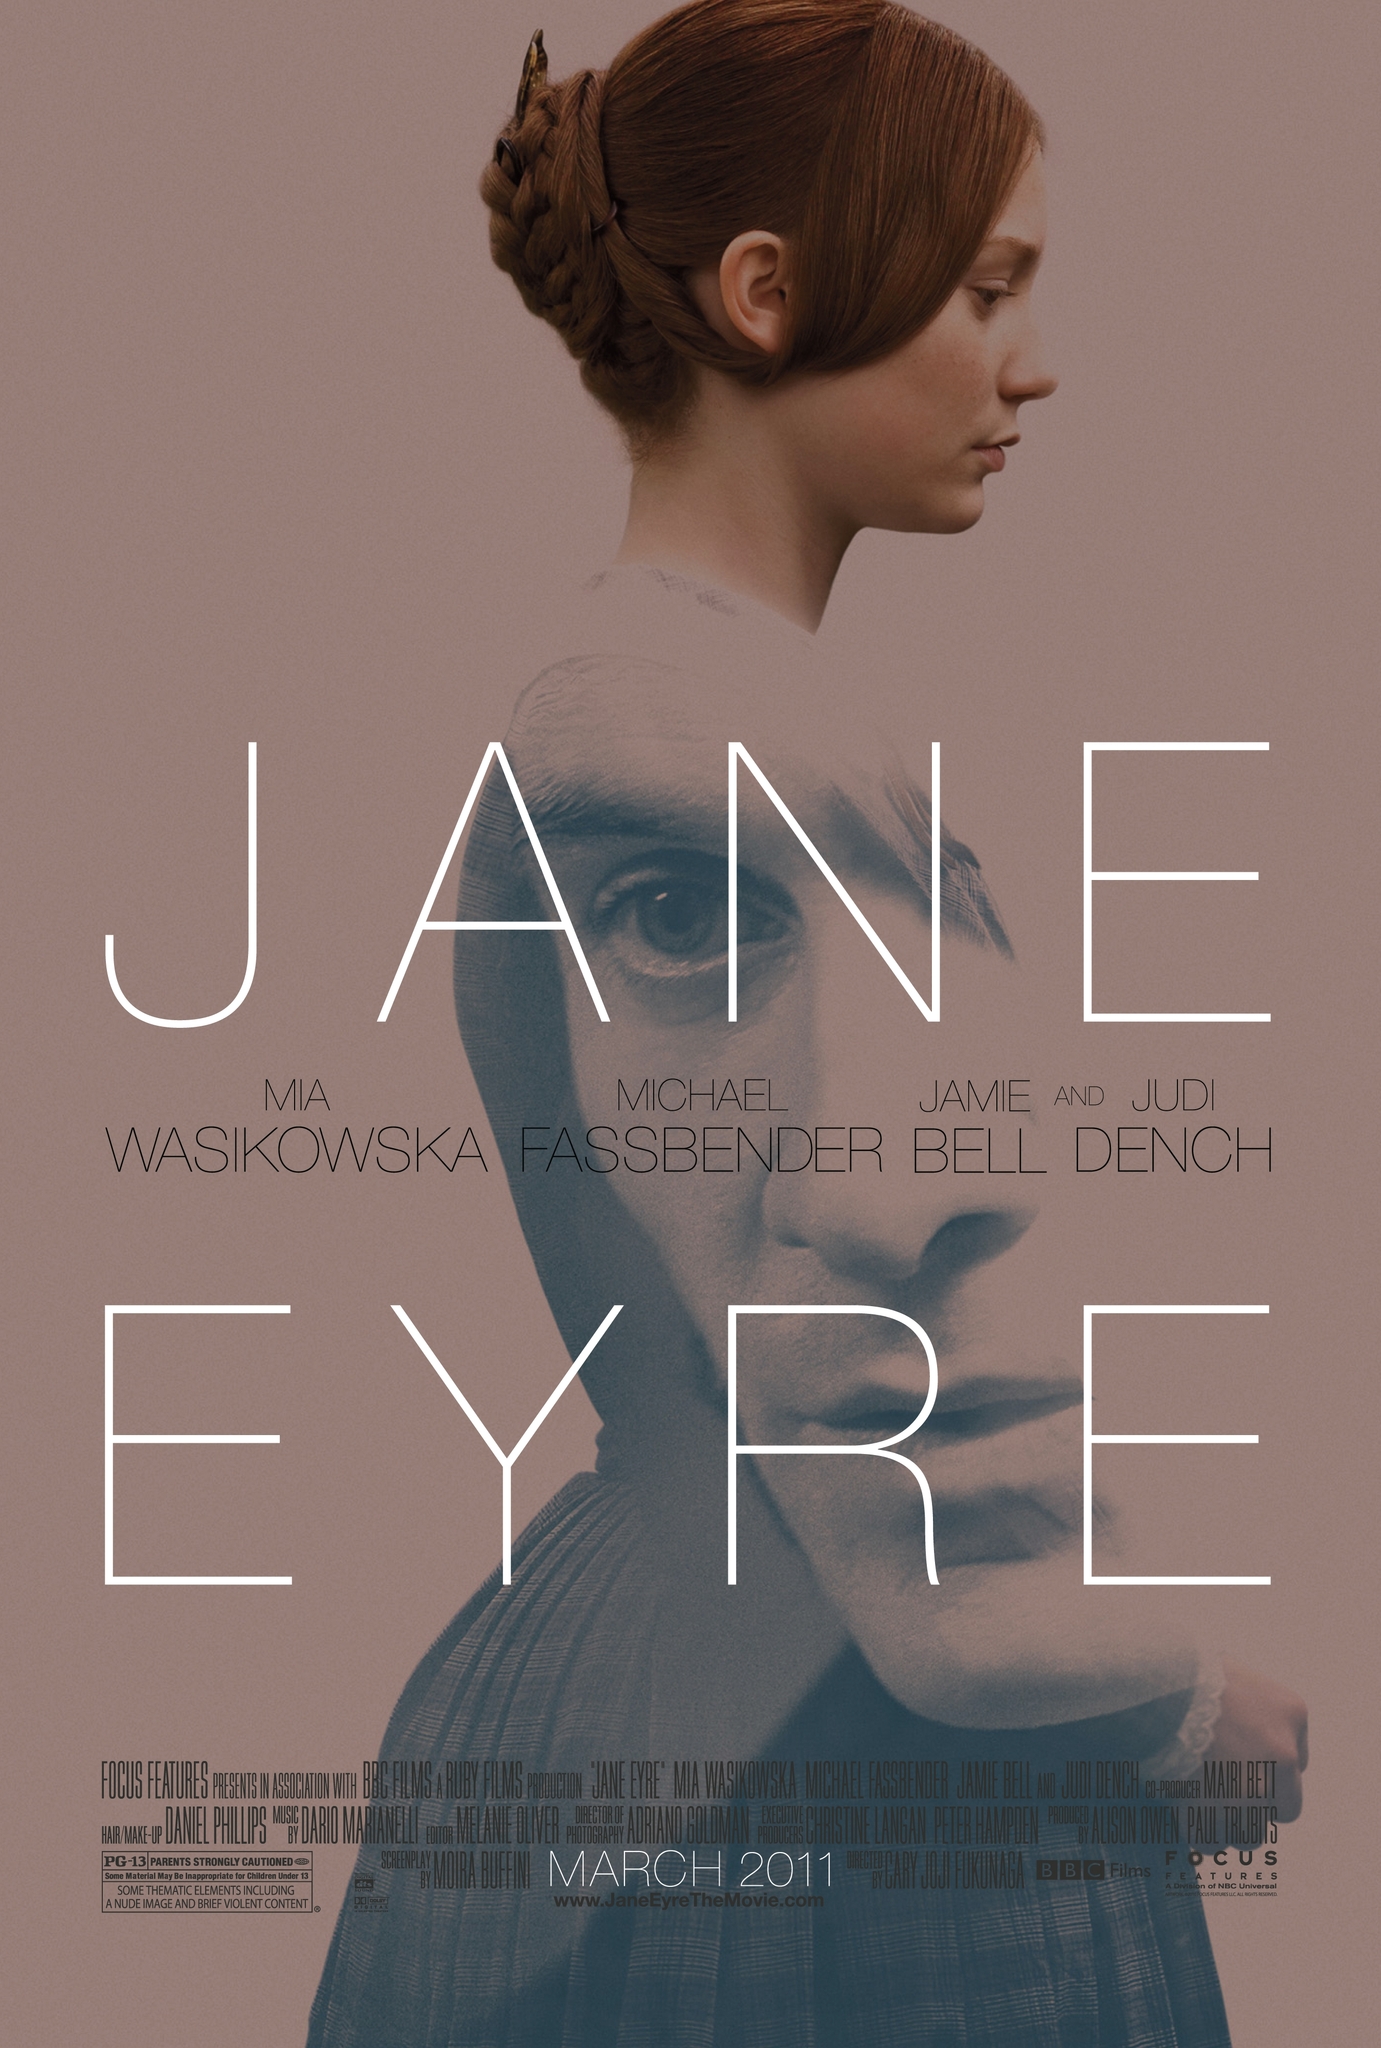 Книга на английском - Шарлотта Бронте Джейн Эйр - обложка книги скачать бесплатно